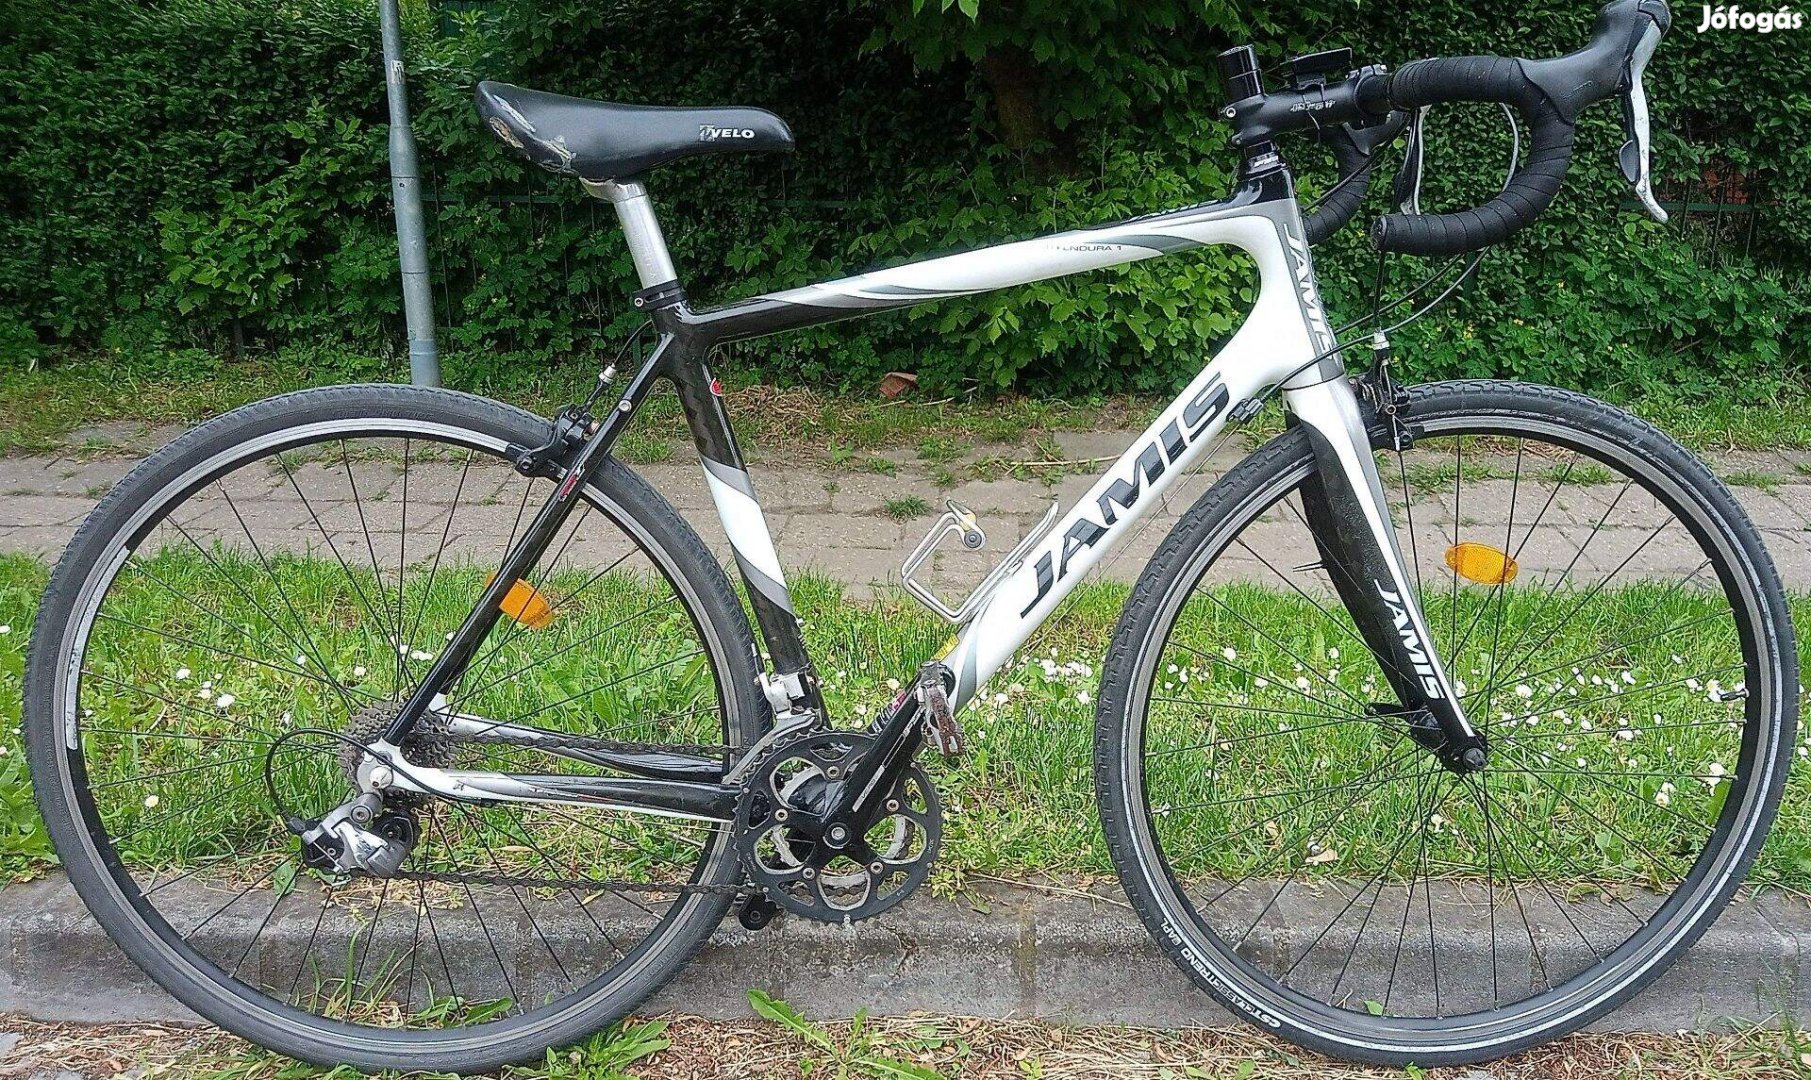 Karbon endurance országúti bicikli Tiagra,105 l, 23 vagy 37 széles gum